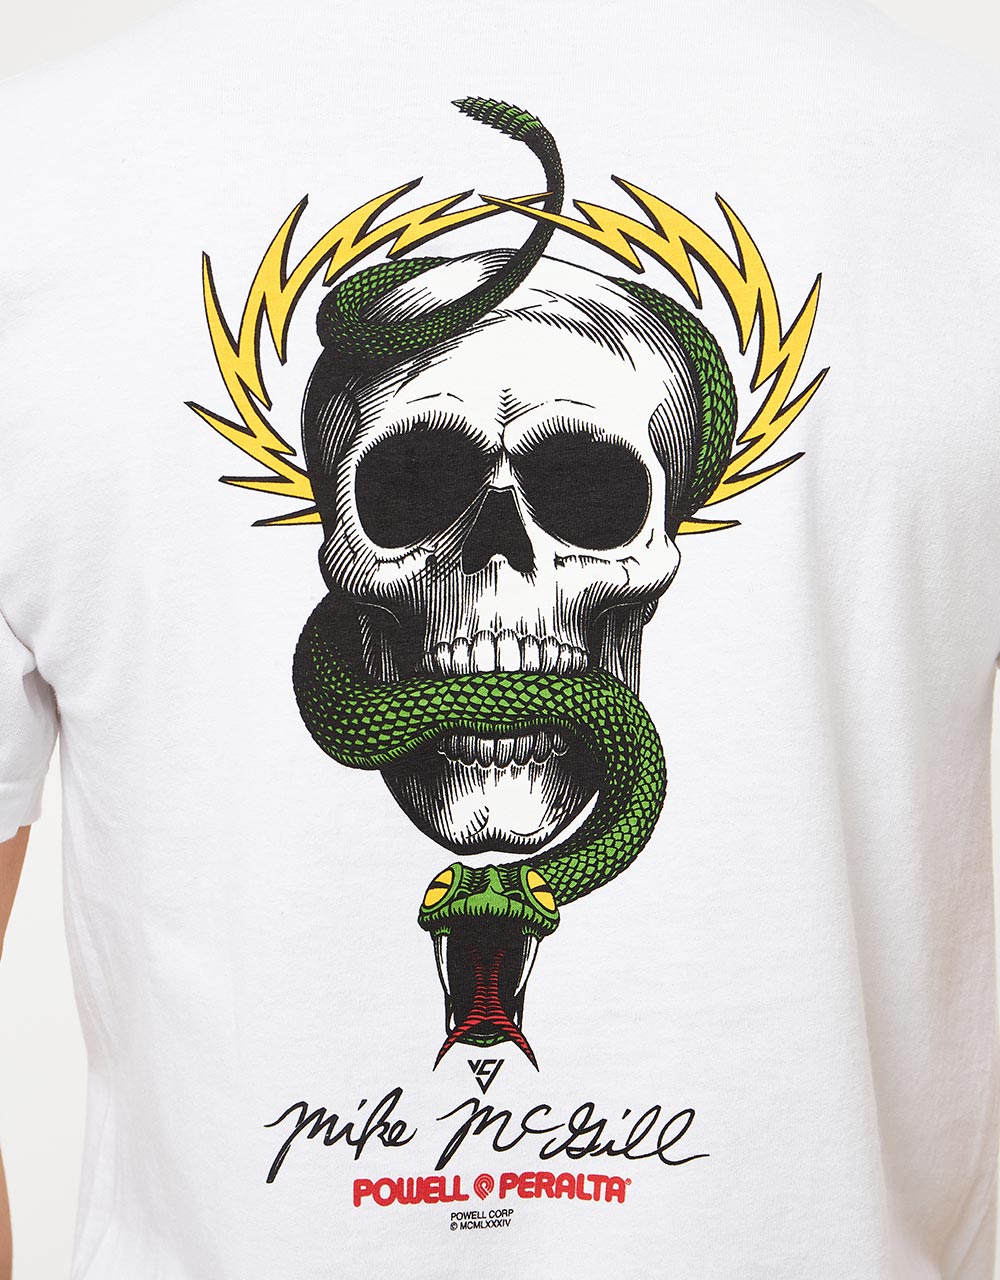 Powell Peralta McGill Skull & Snake T-Shirt - White